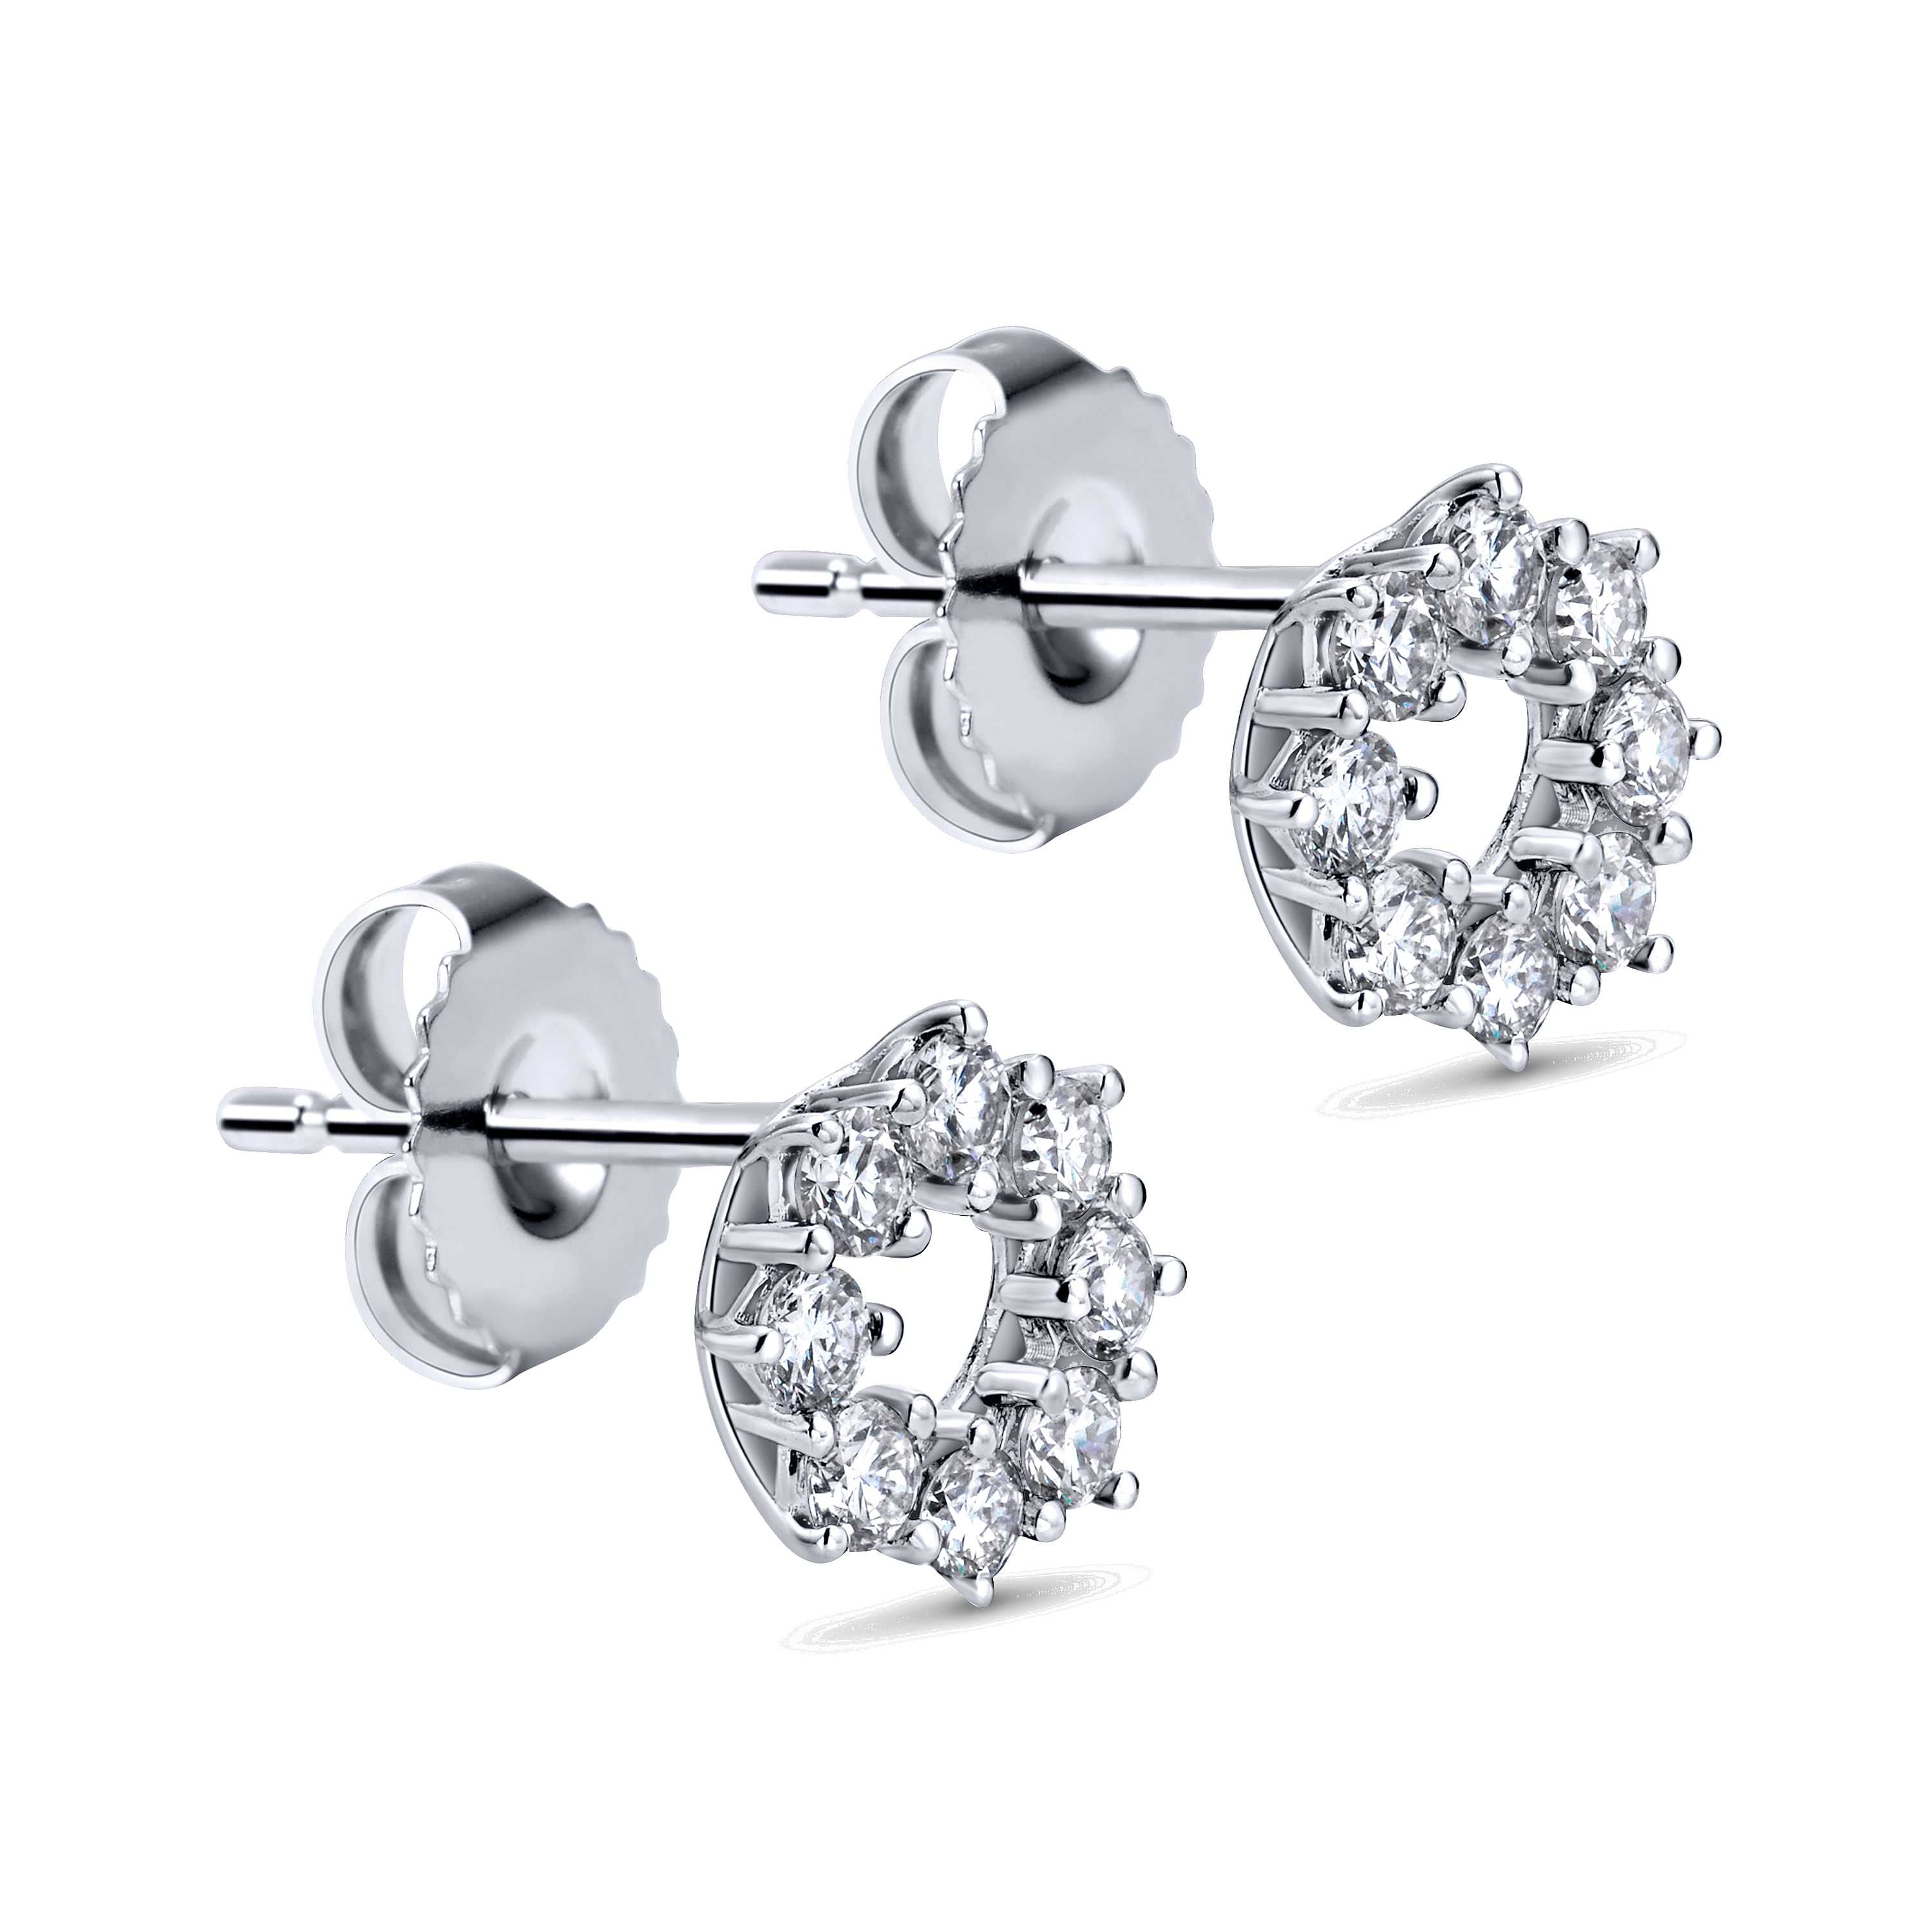 14K White Gold Diamond Earrings